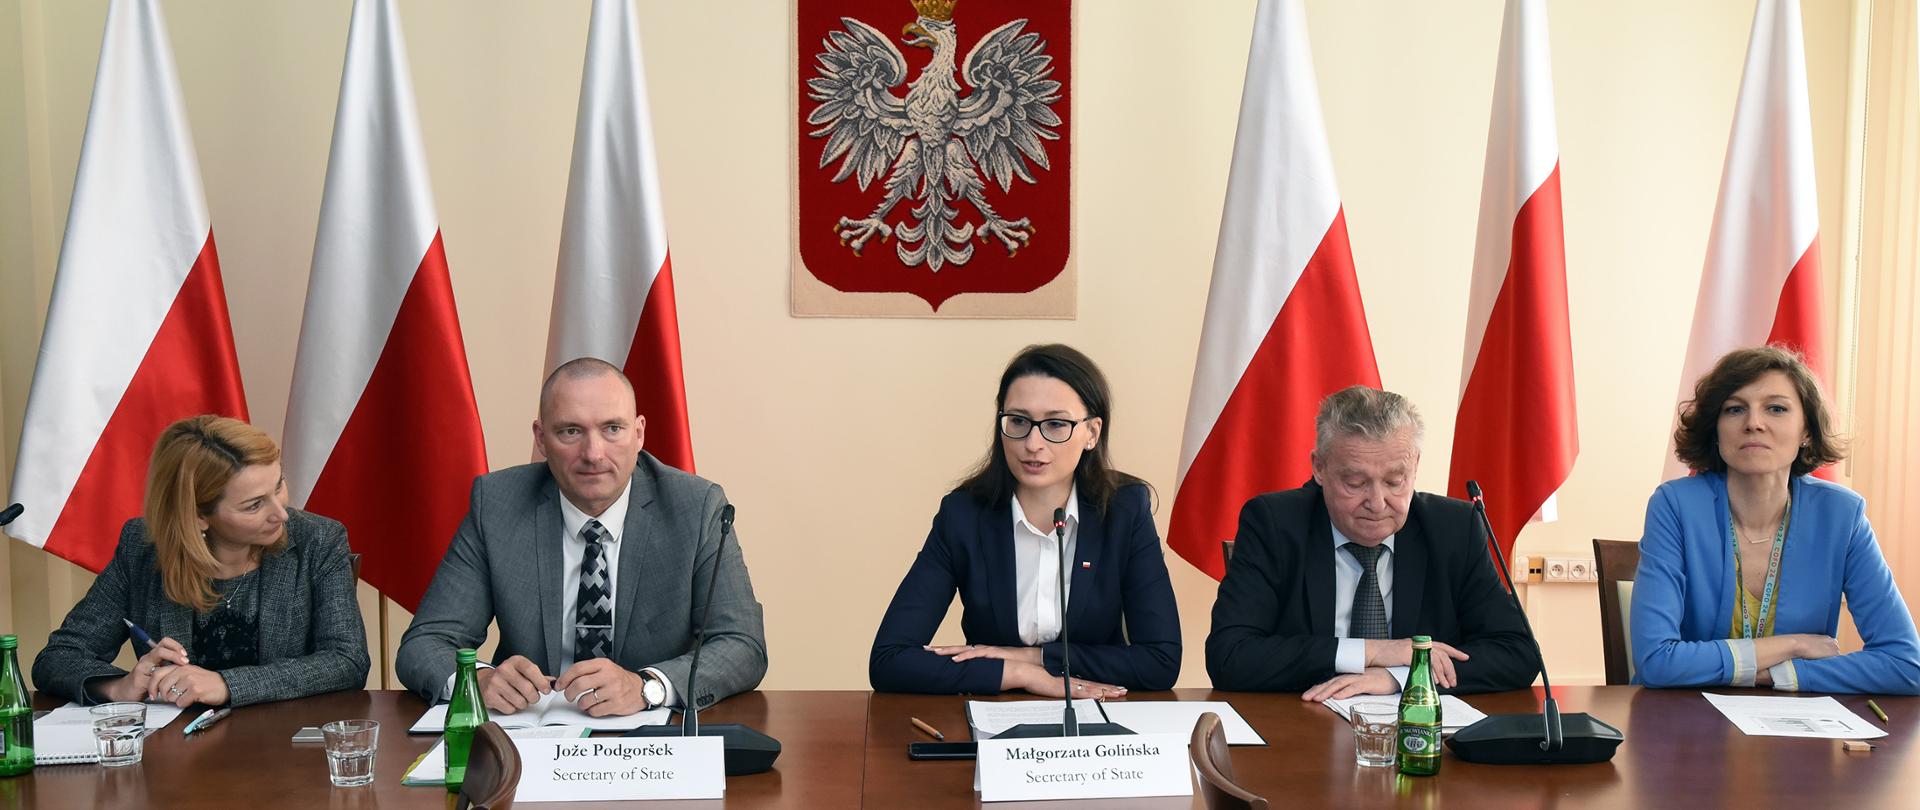 Spotkanie eksperckie Mechanizmu ds. Współpracy w Leśnictwie z udziałem wiceminister Małgorzaty Golińskiej